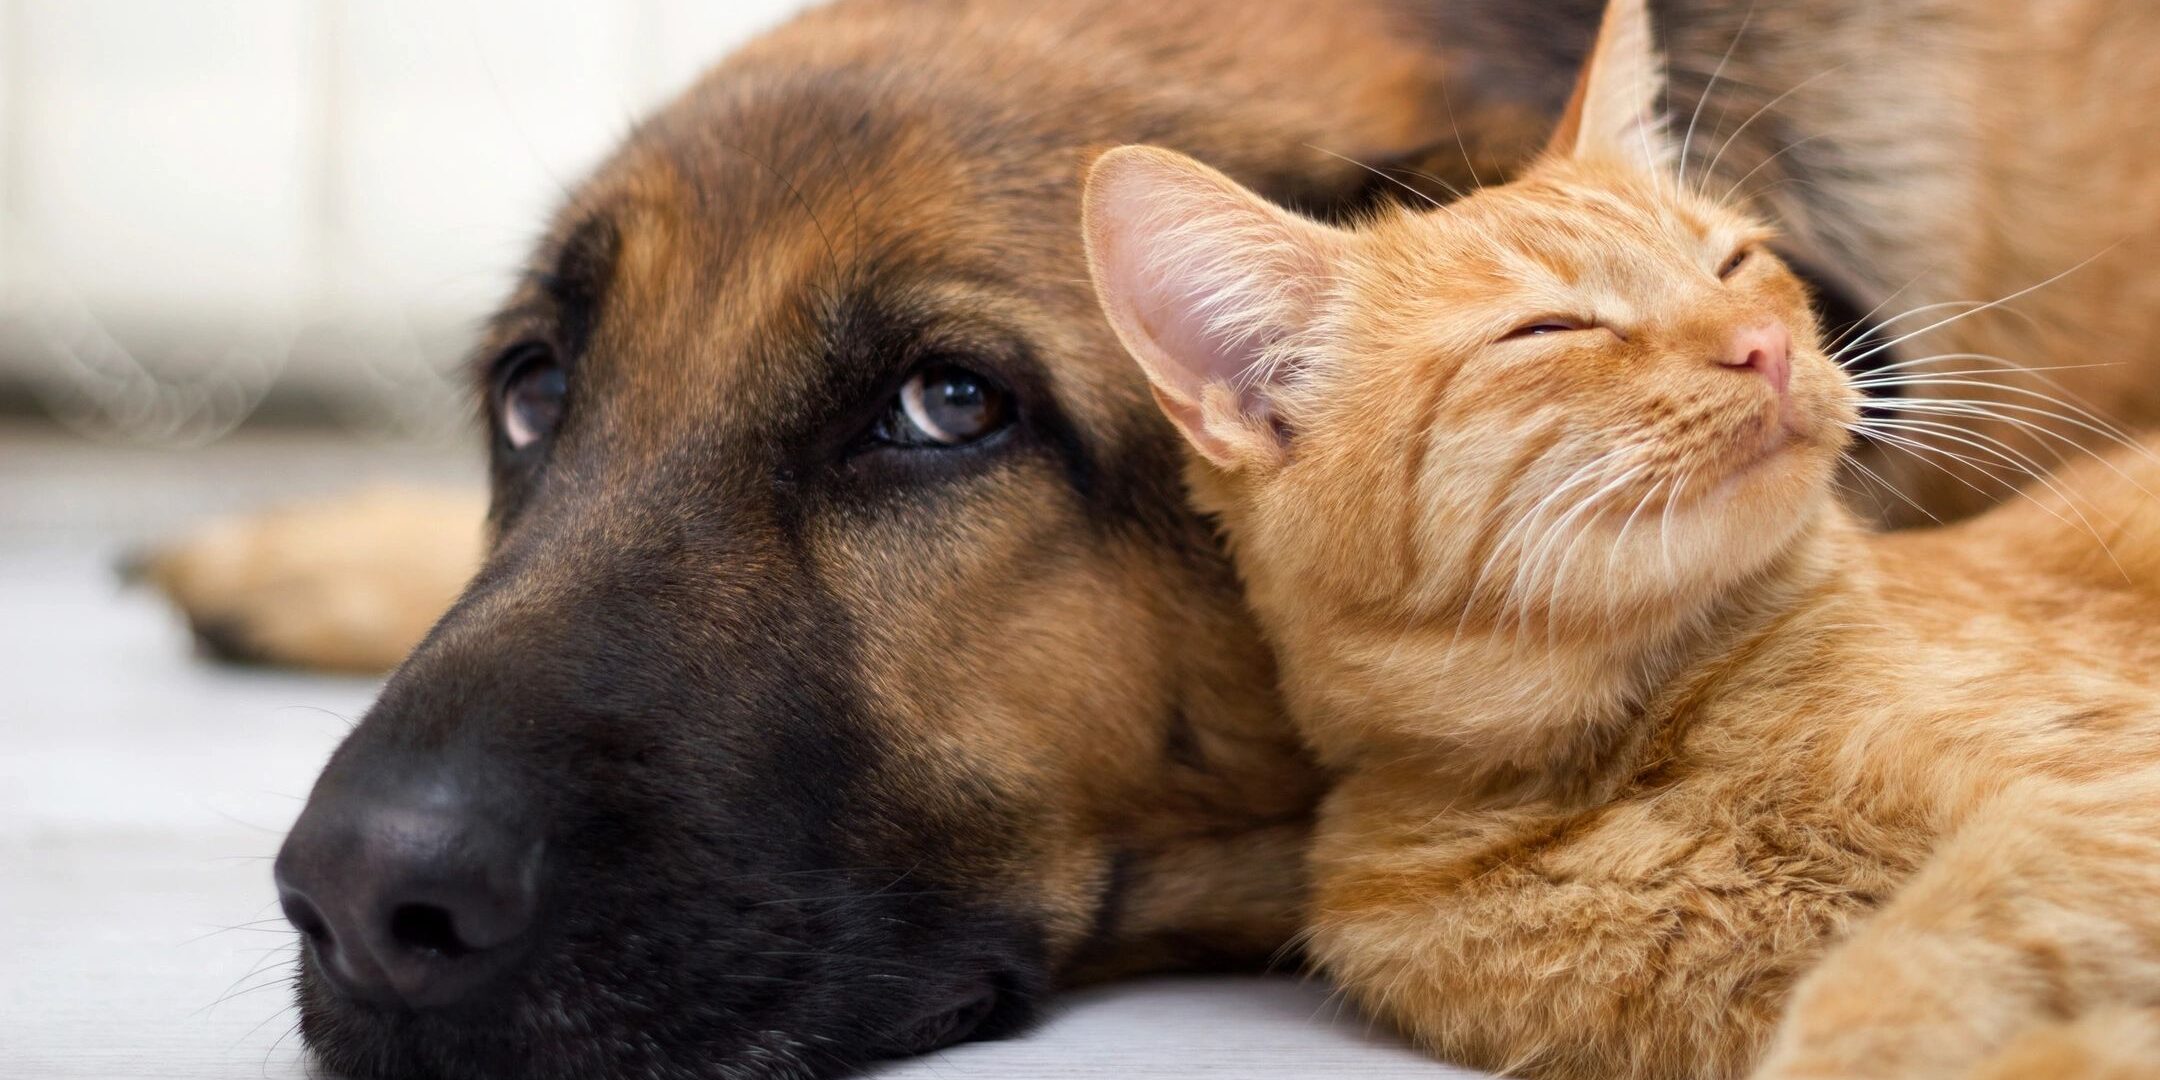 are retirement communities pet friendly?